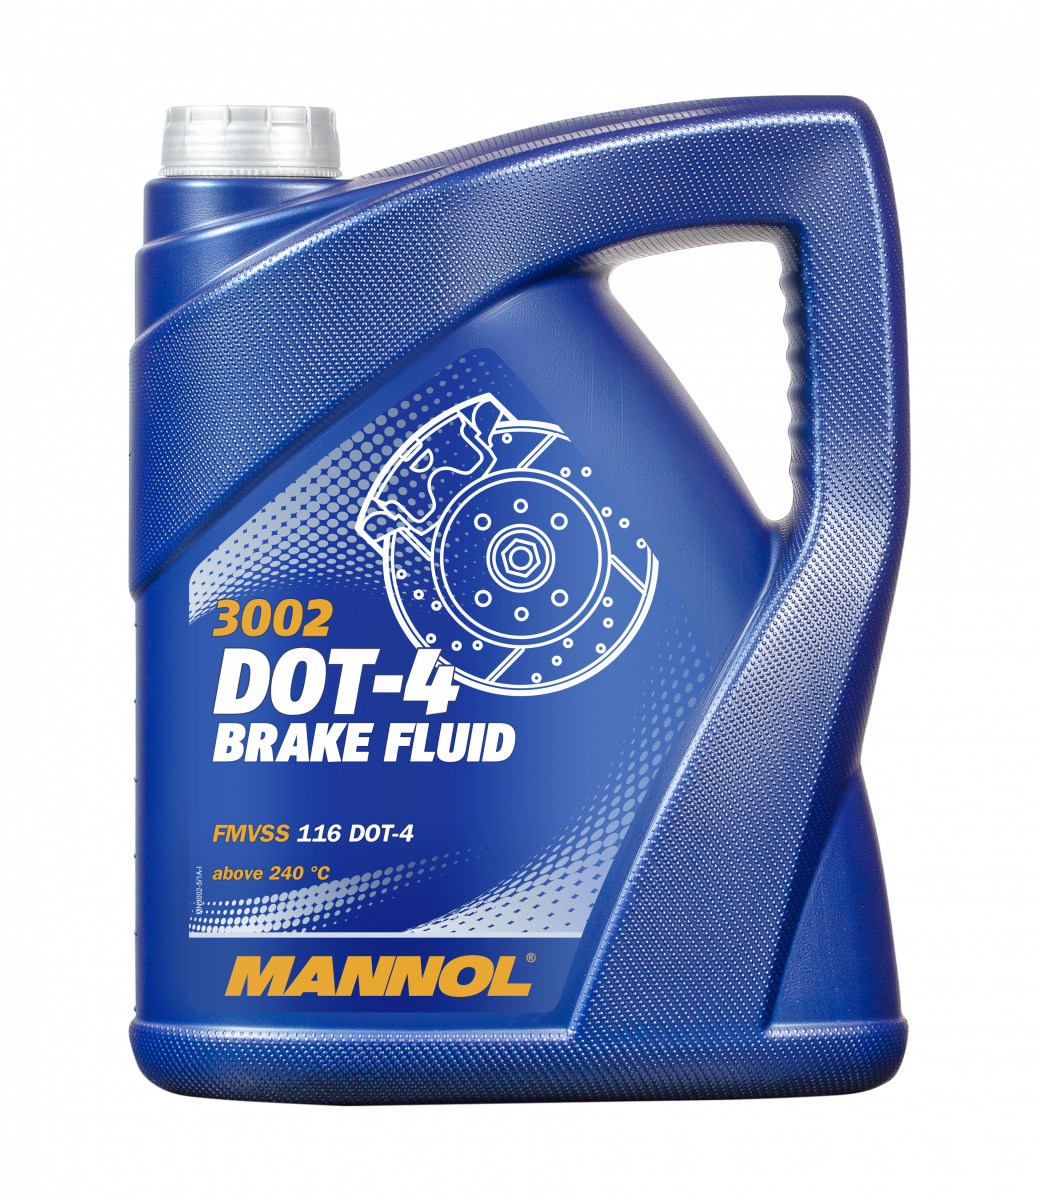 Mannol Bremsflüssigkeit DOT-4 Brake Fluid 5 Liter